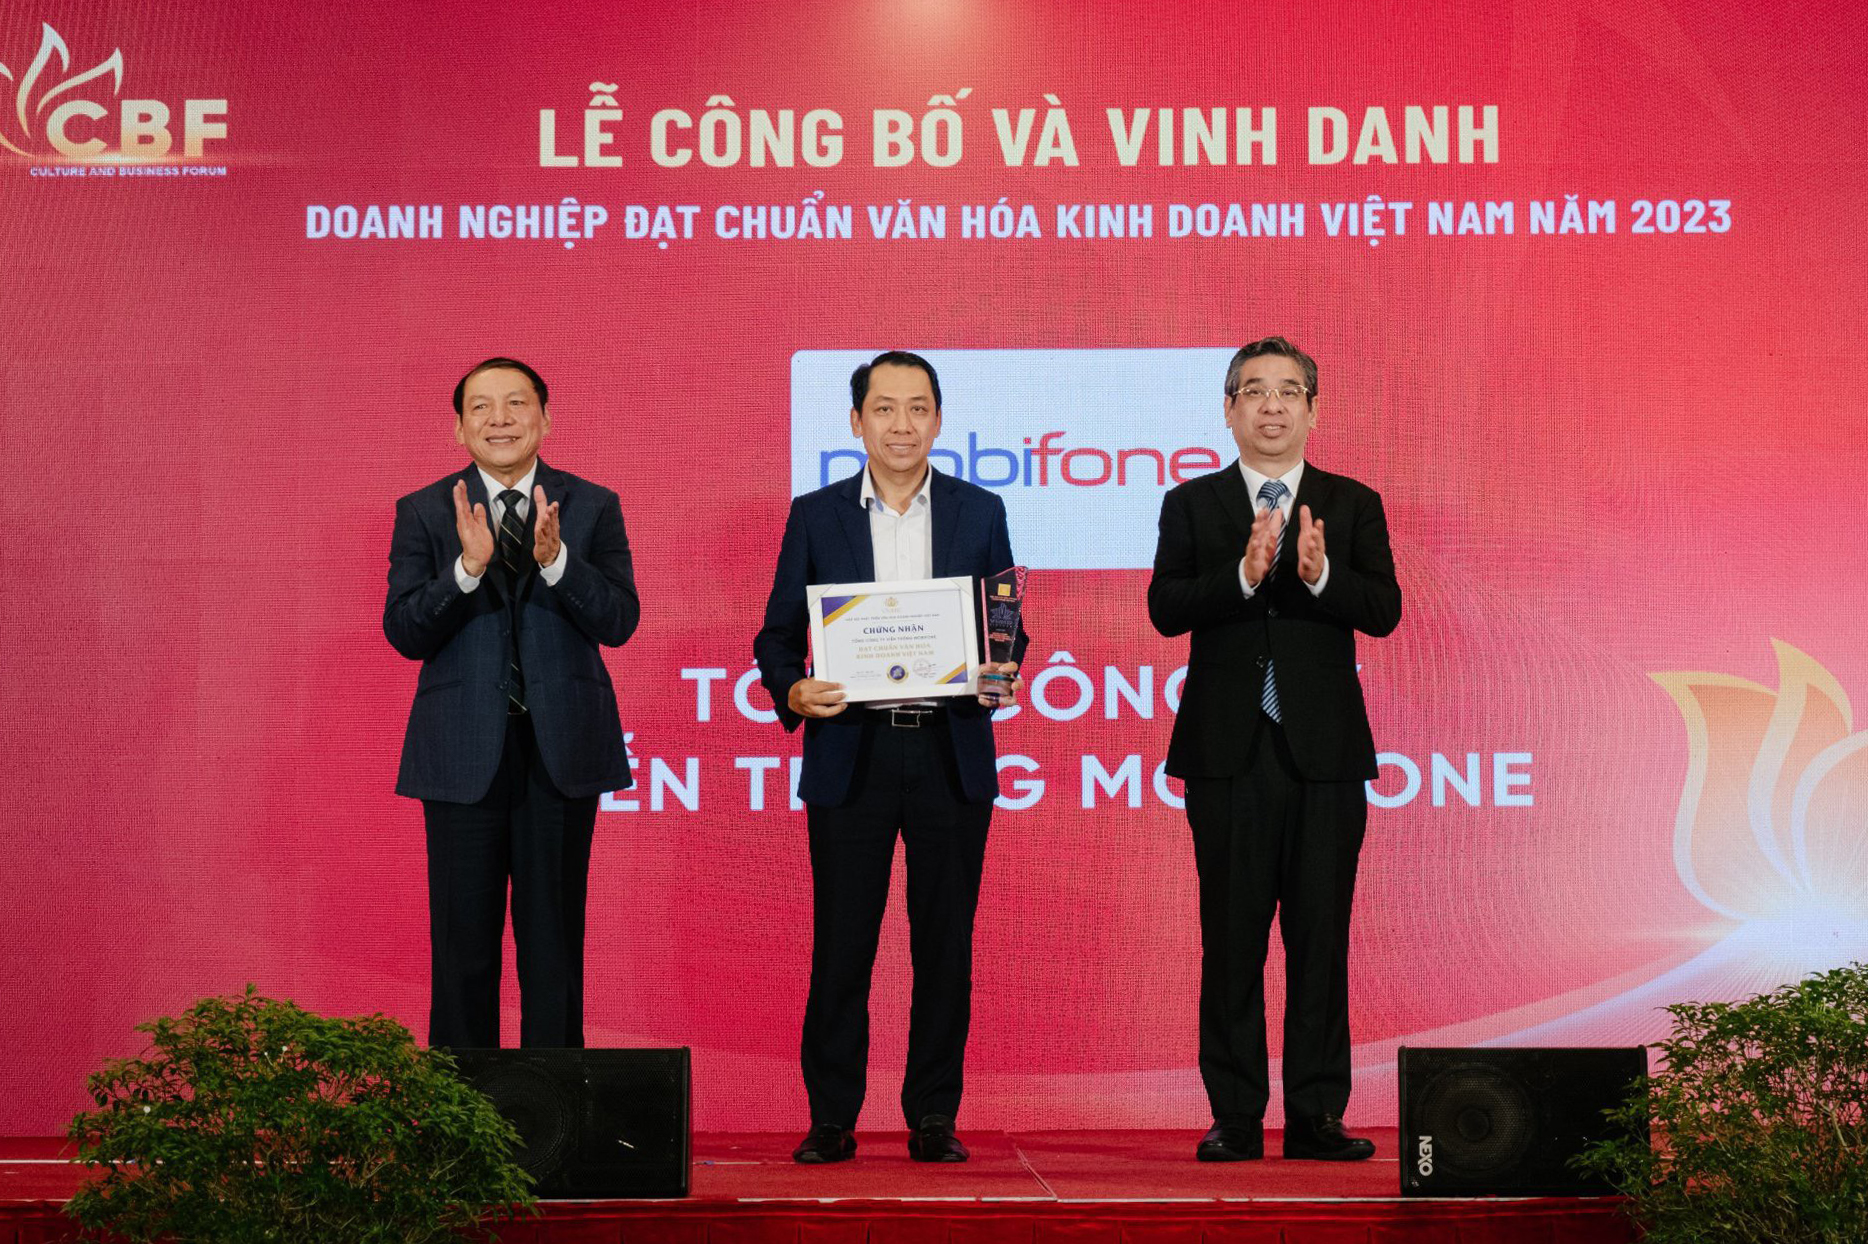 MobiFone được công nhận và vinh danh là Doanh nghiệp đạt chuẩn Văn hóa Kinh doanh Việt Nam năm 2023.